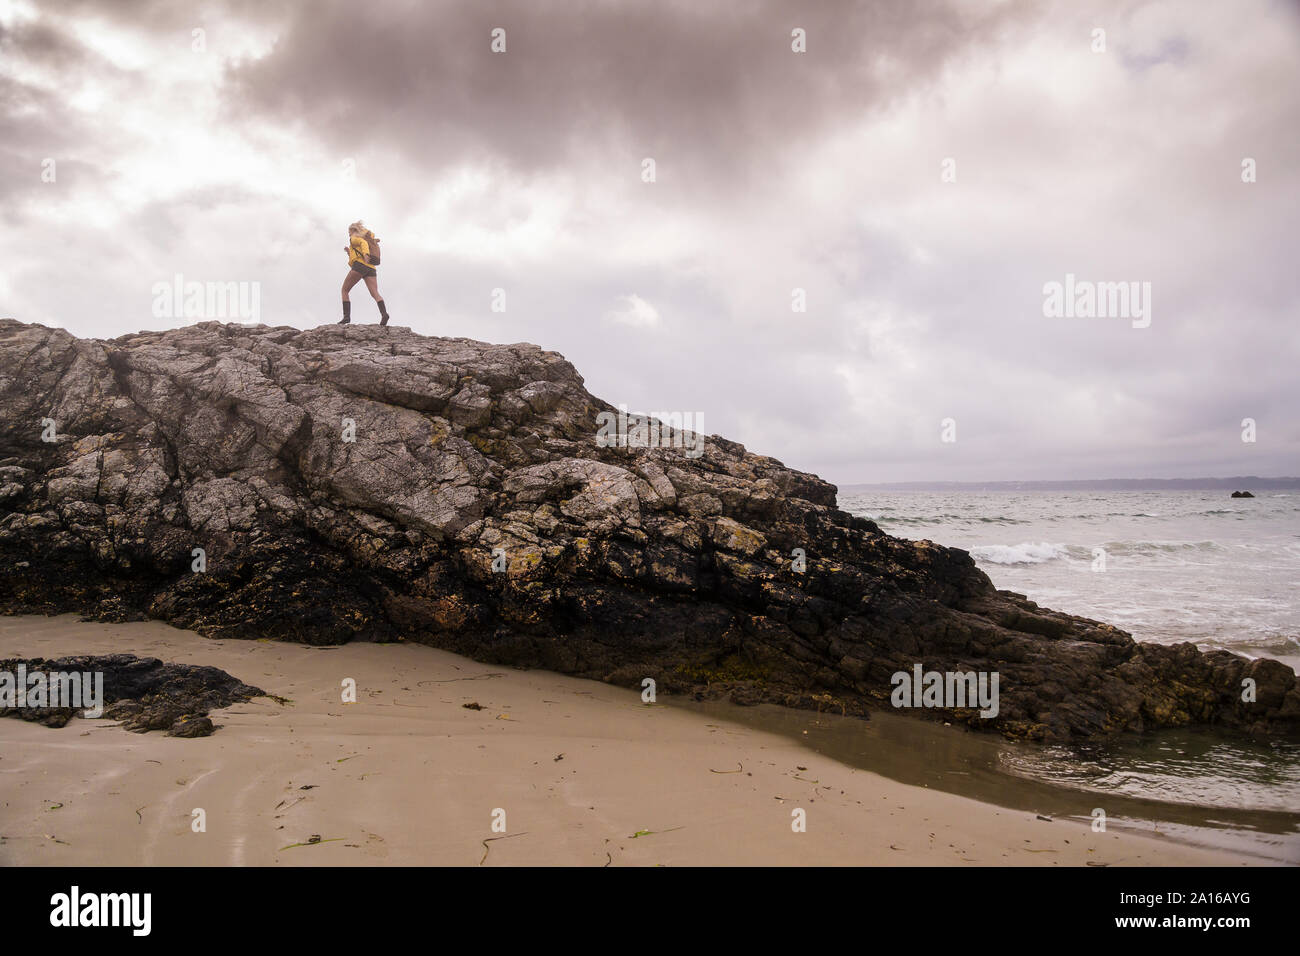 Mujer vistiendo chaqueta de lluvia amarilla de pie en la playa rocosa Foto de stock